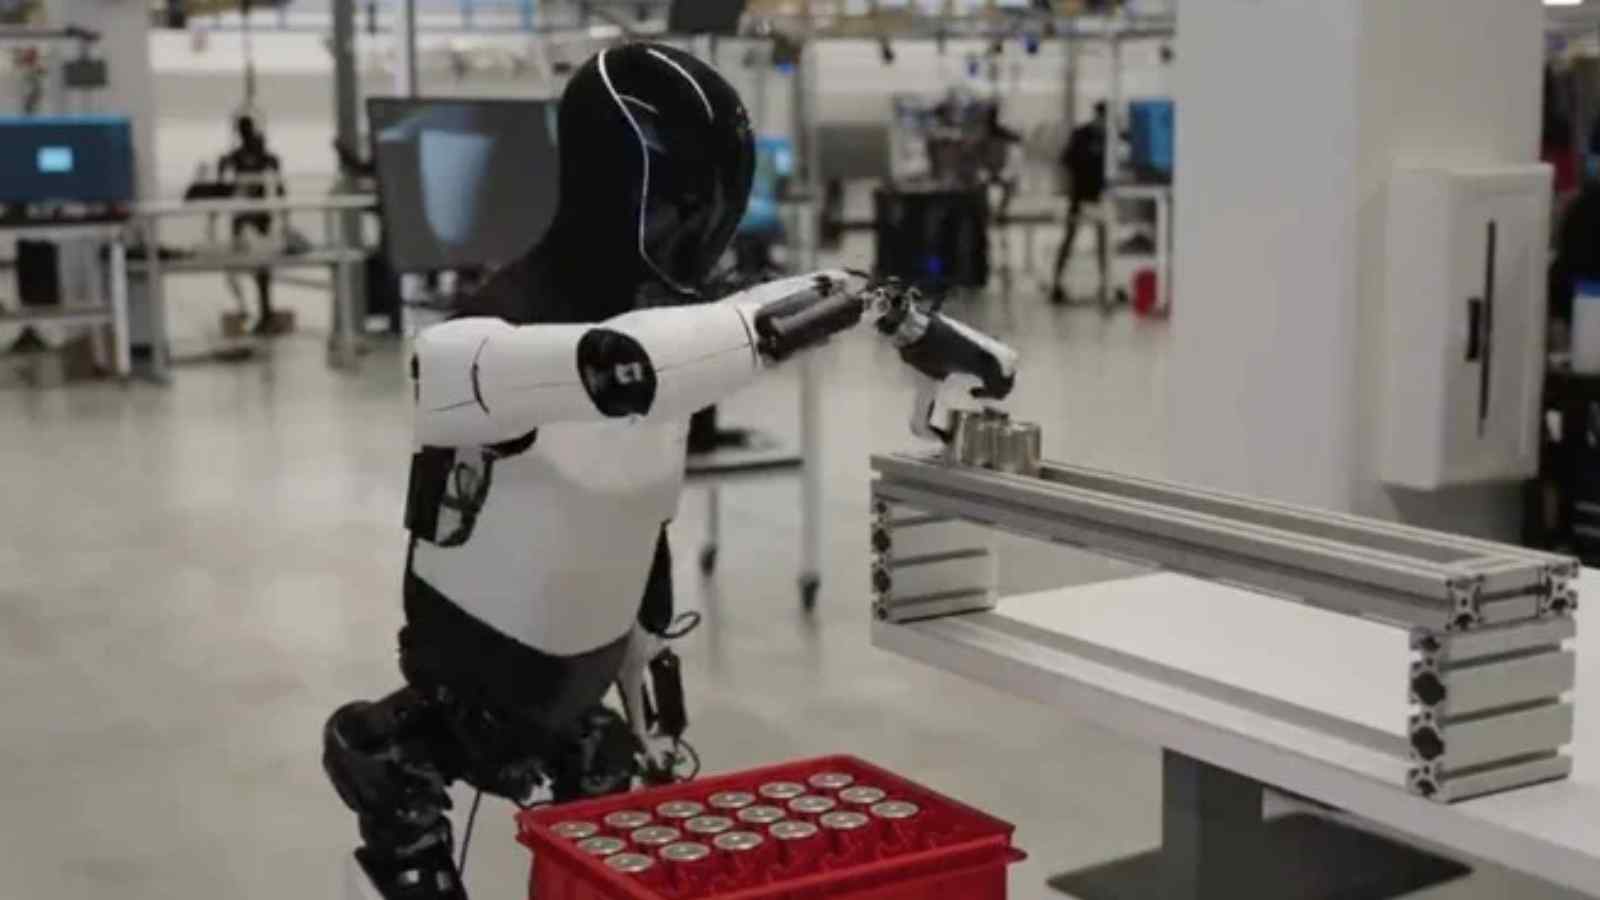 Un nuovo video rilasciato da Tesla mostra il robot Optimus mentre si occupa di un lavoro in fabbrica